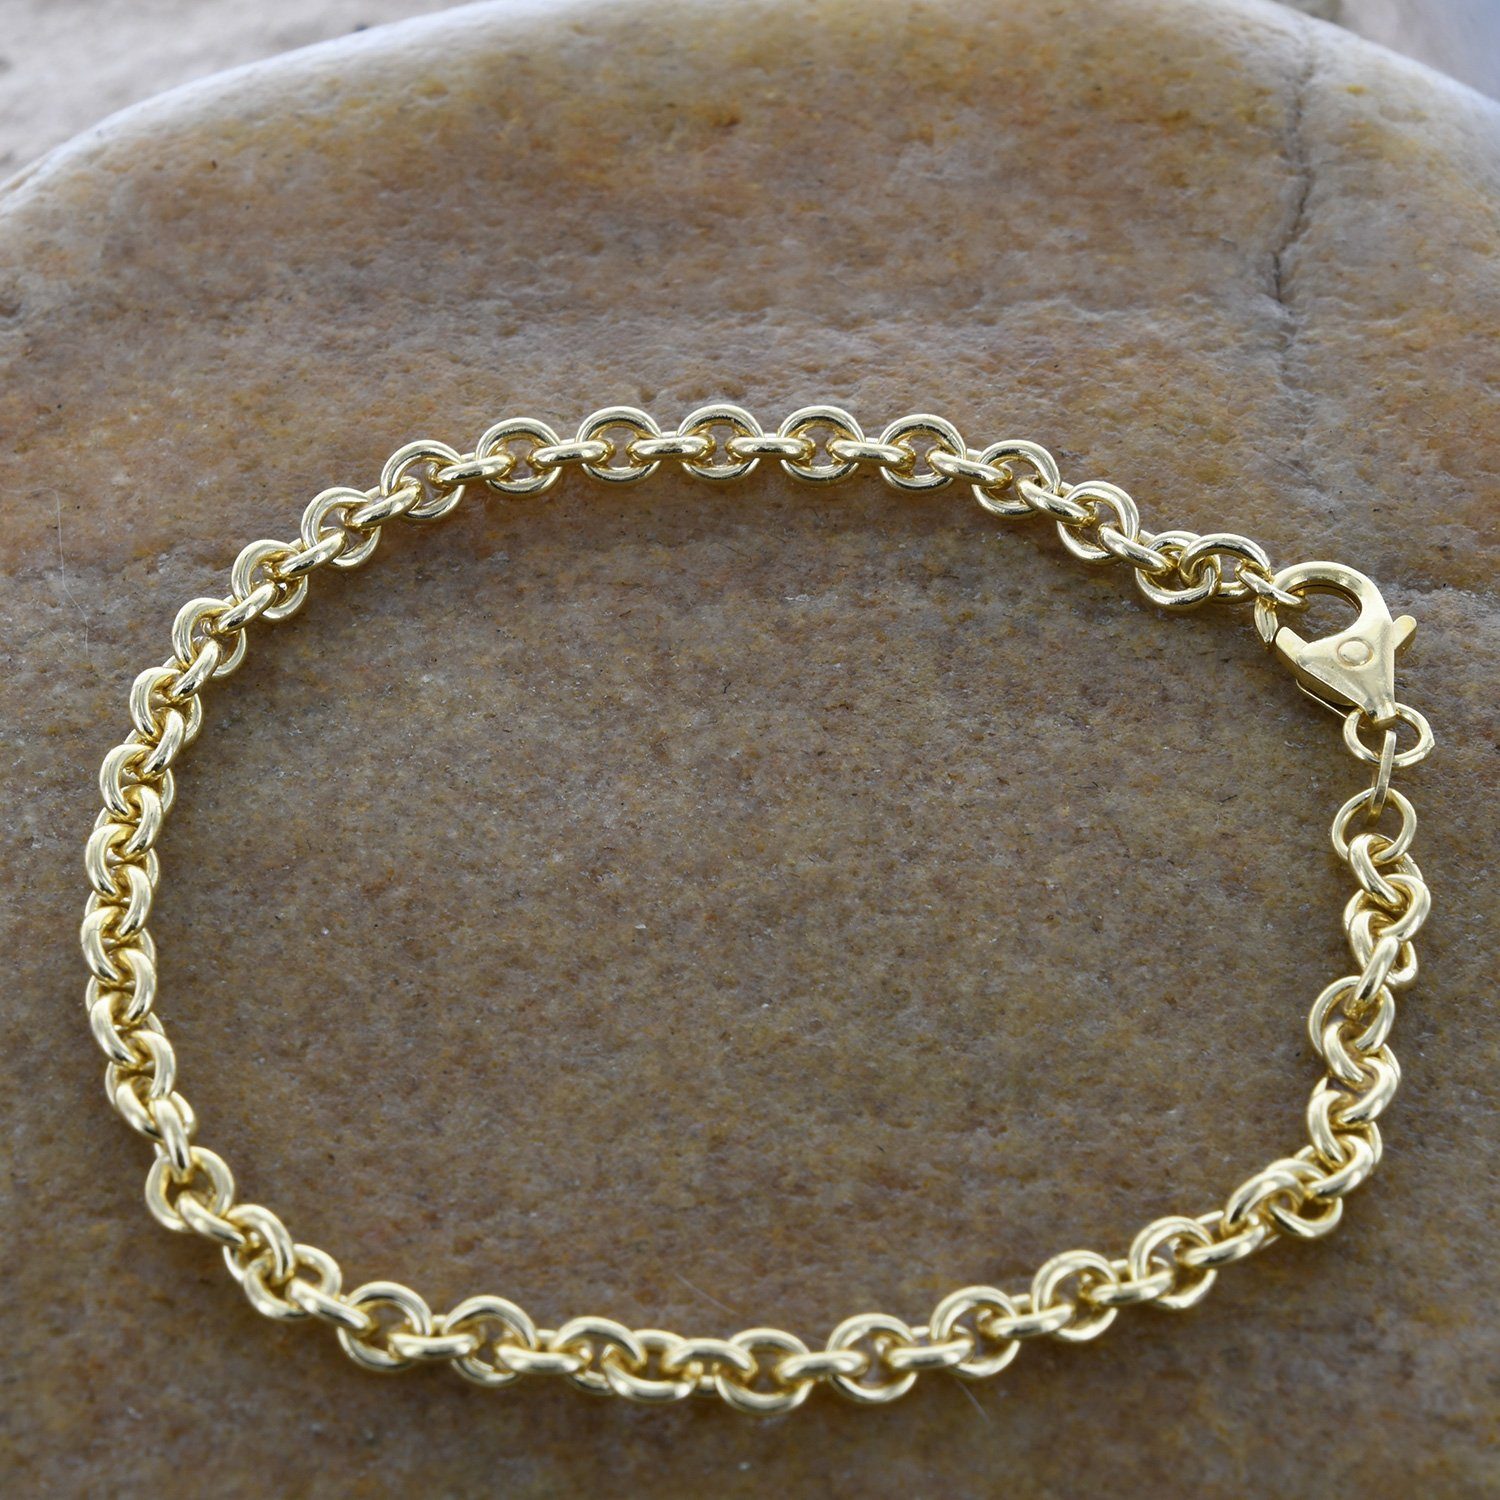 Herren Schmuck HOPLO Goldkette 4,0 mm 19 cm 585 - 14 Karat Gold Armkette Ankerkette rund massiv Gold hochwertige Goldkette (inkl